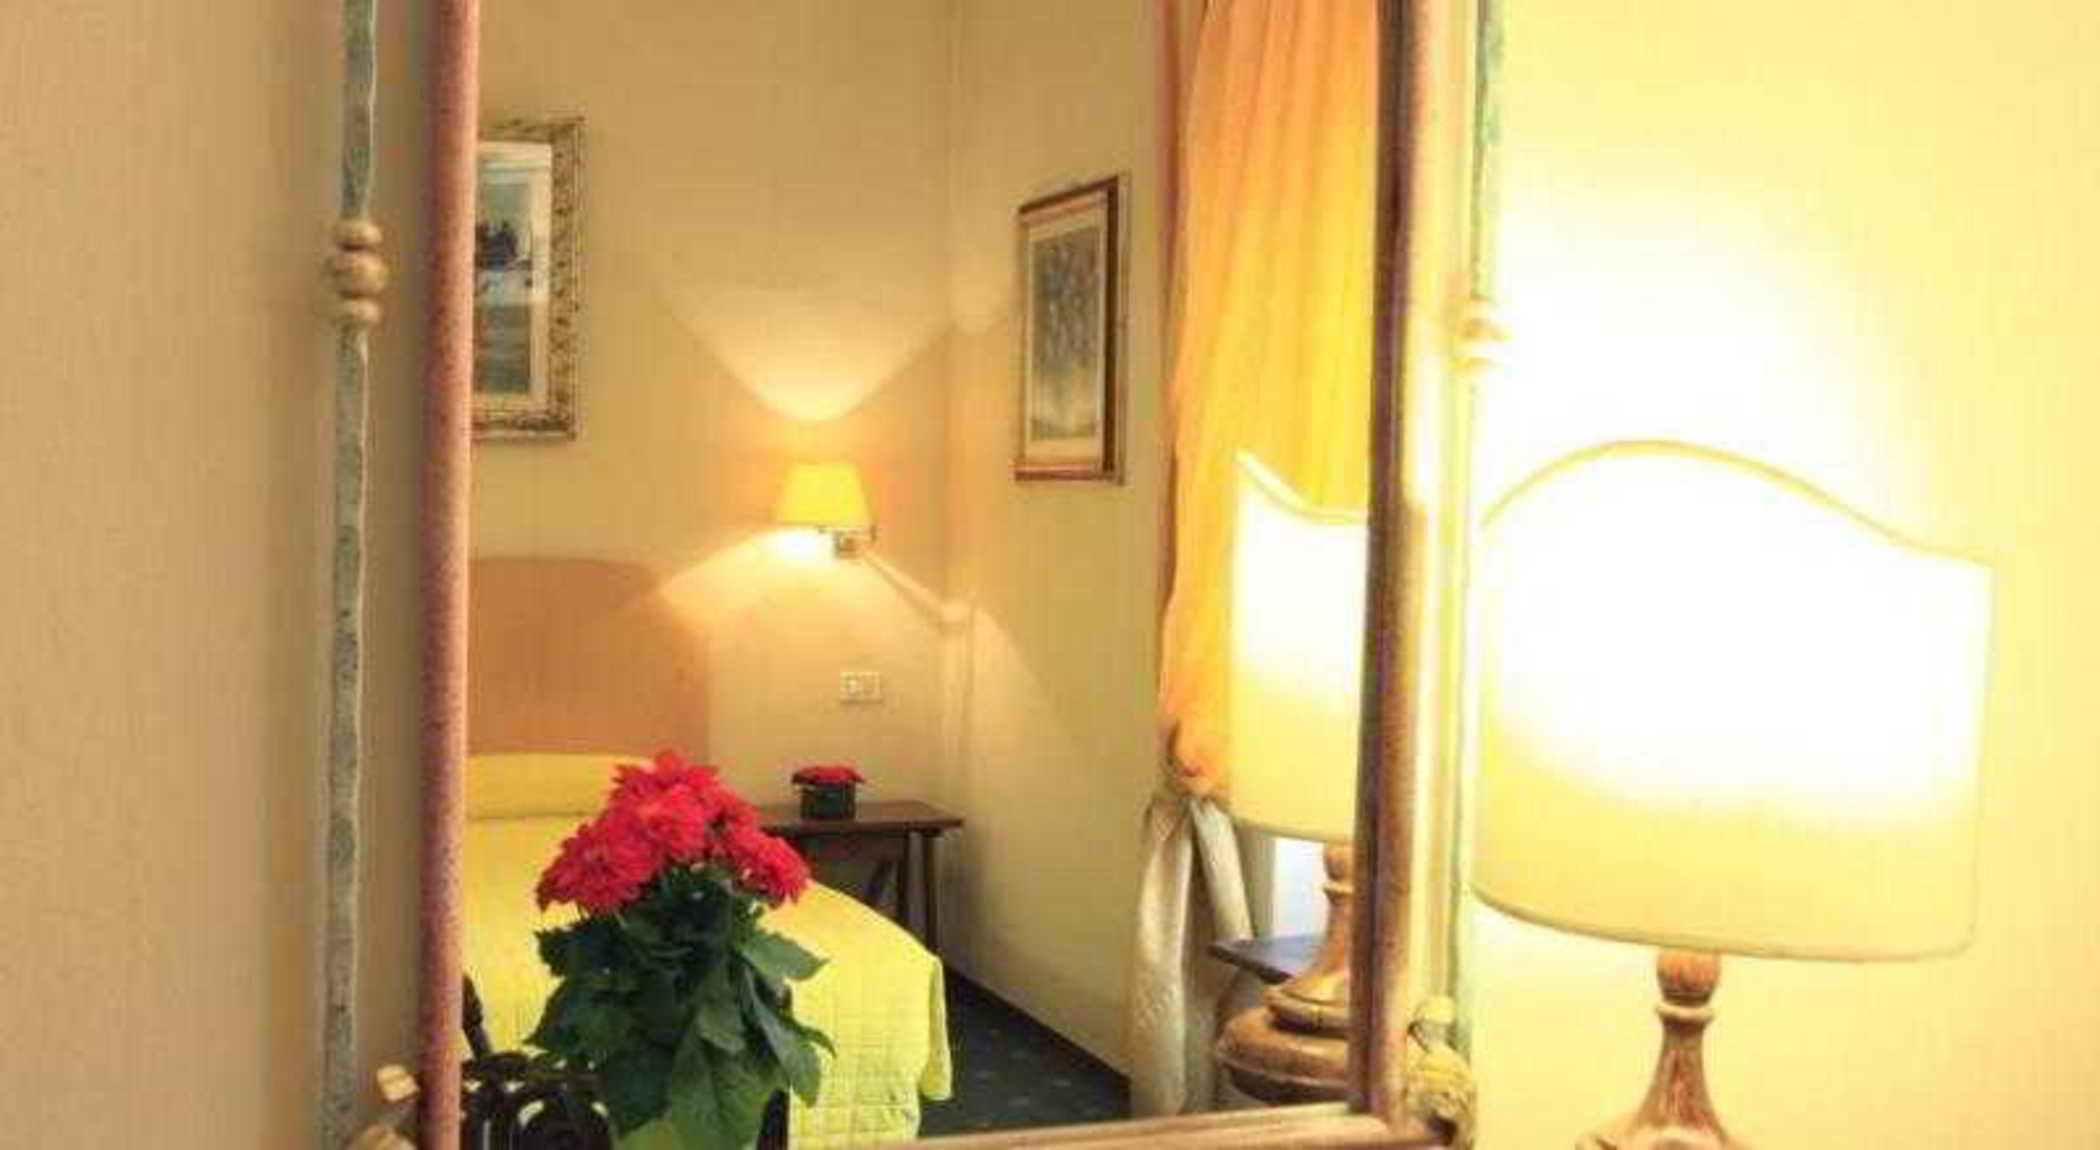 Hotel S.Giorgio & Olimpic Florencja Zewnętrze zdjęcie